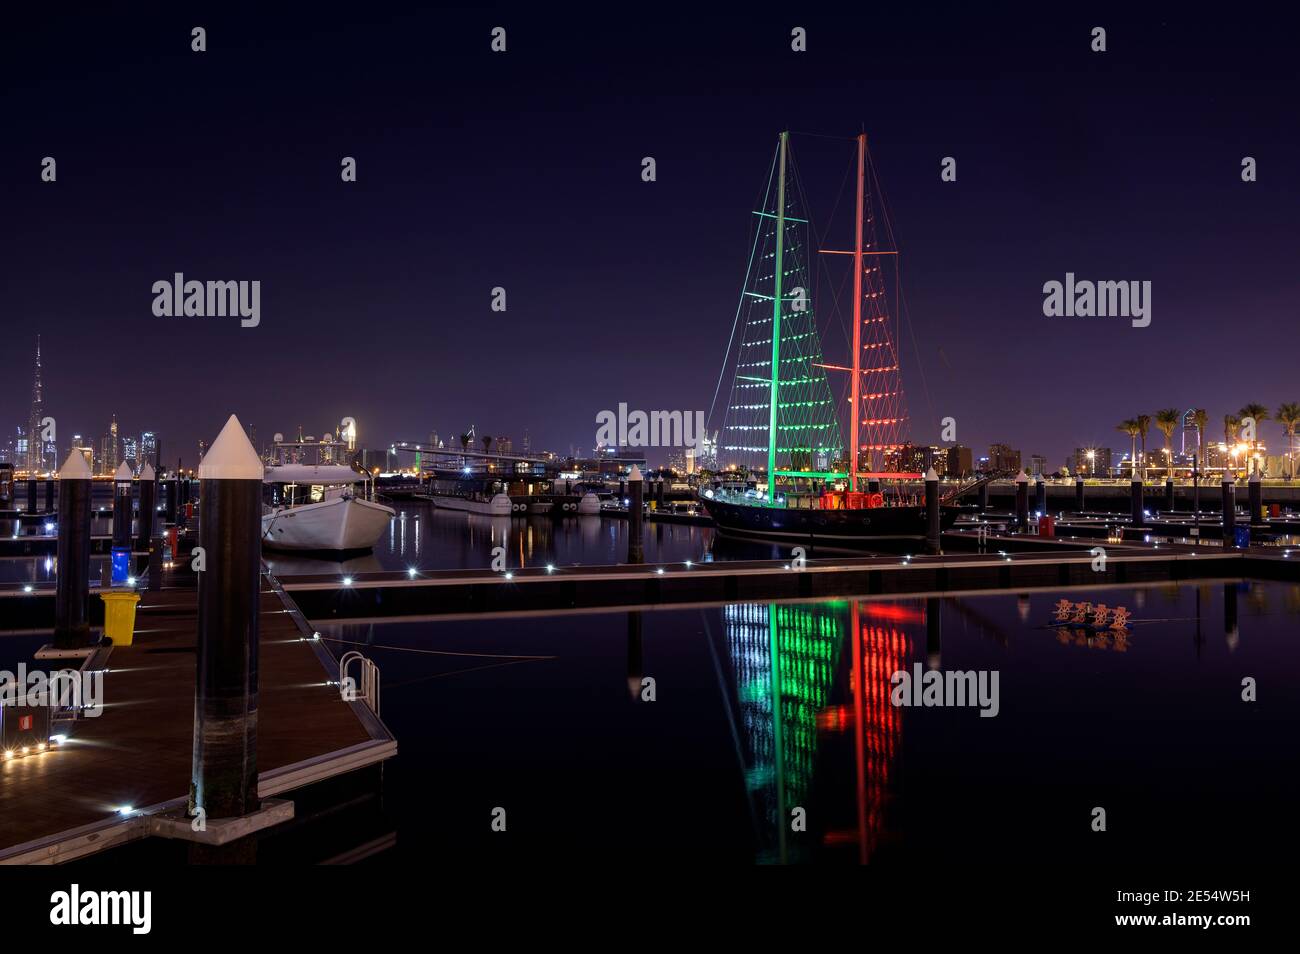 El horizonte del puerto de Dubai creek con barcos y barcos iluminados en colores de bandera para el día nacional de los emiratos árabes unidos capturados en el Ras al khor, Dubai Foto de stock